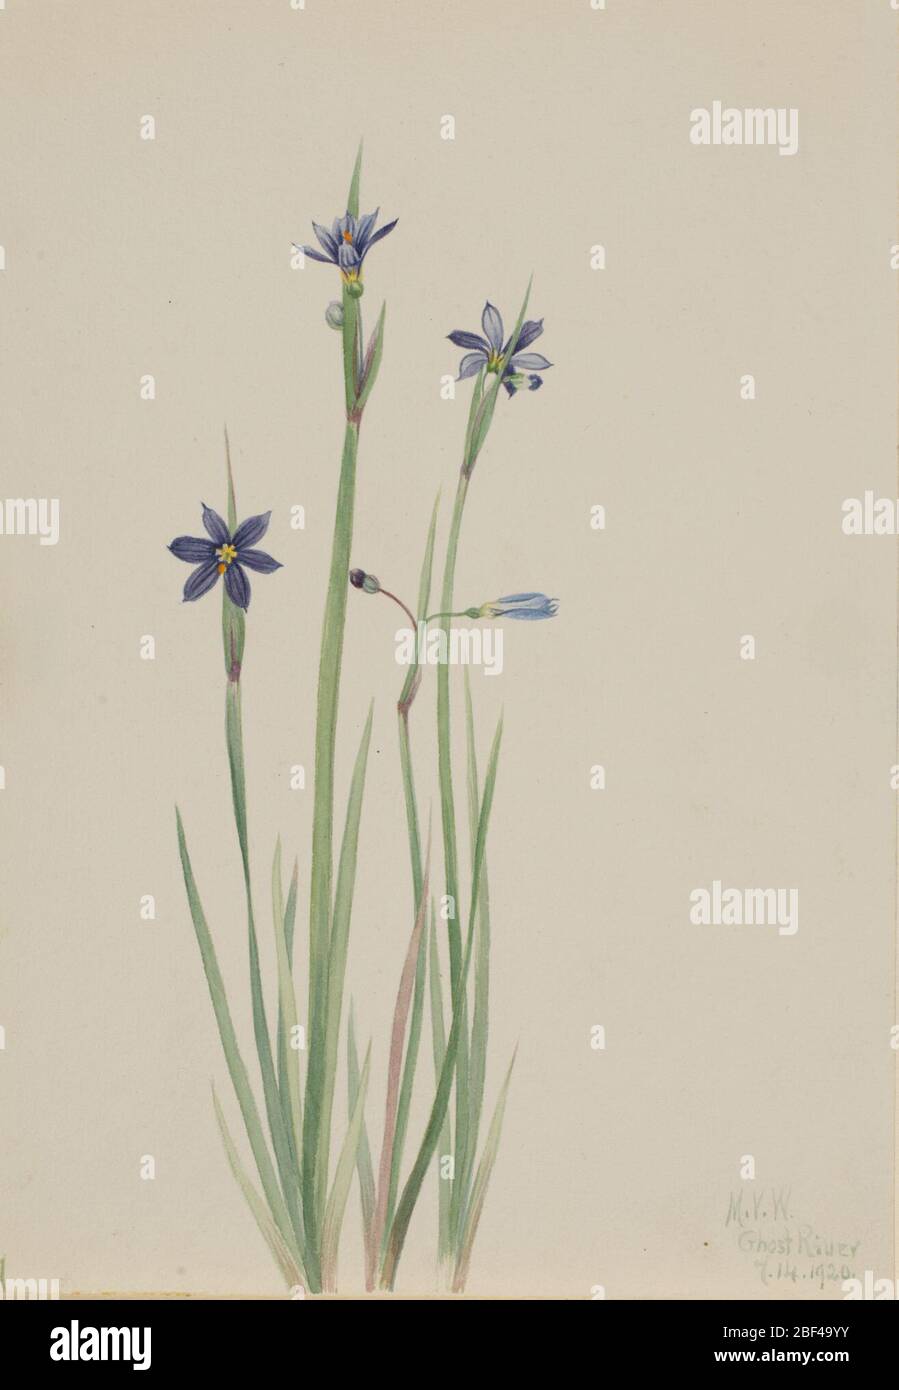 Blueeyedgrass Sisyrinchium angustifolium. Stock Photo